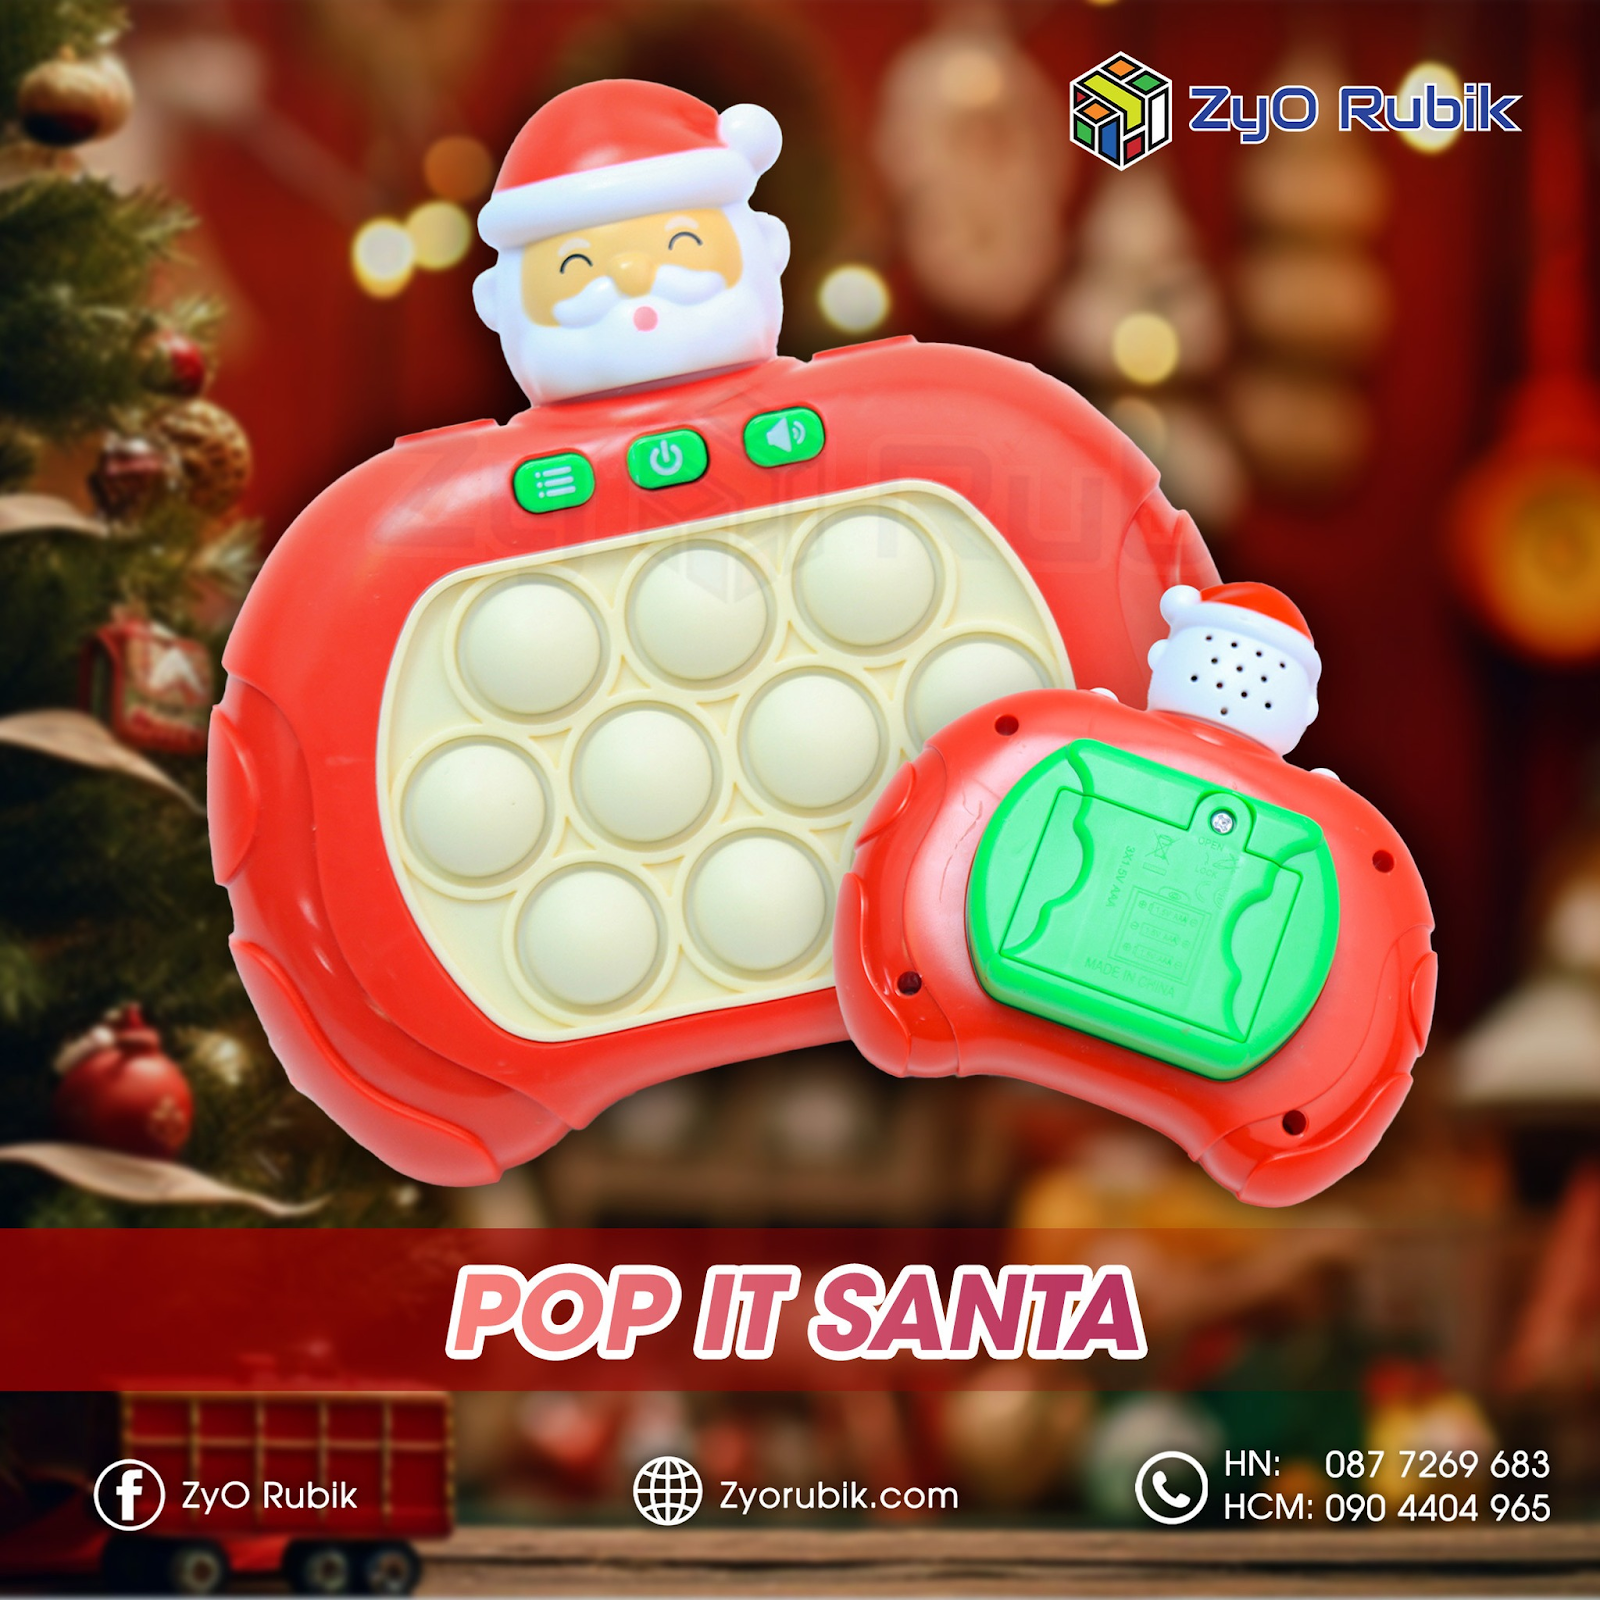 Pop it Santa: Món đồ chơi Giáng sinh giúp bạn hết cô đơn